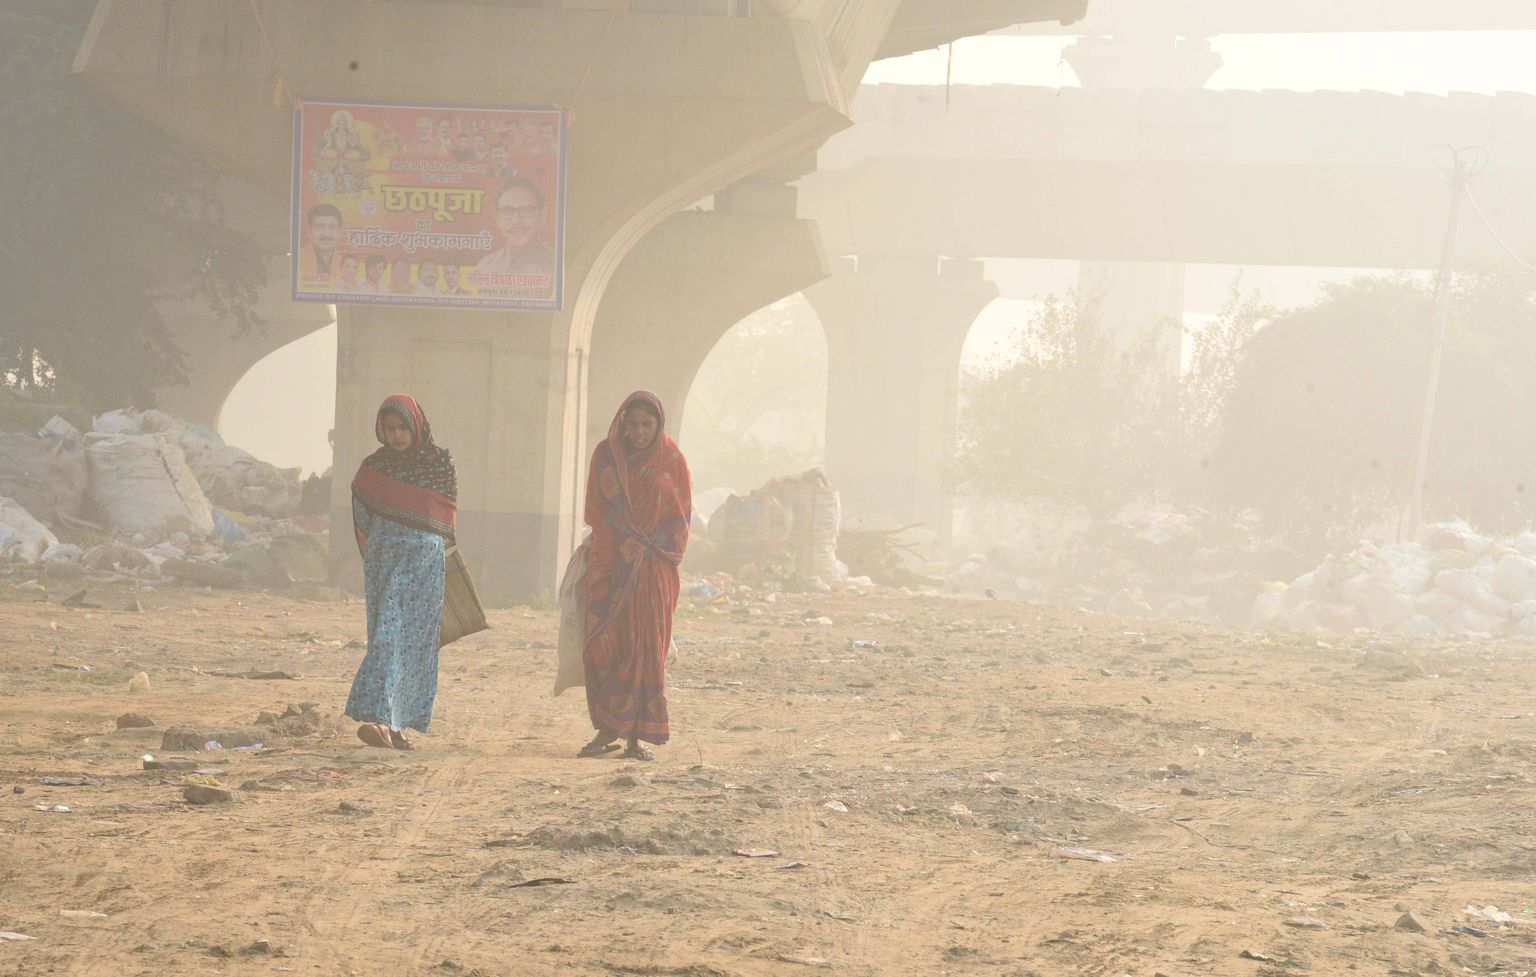 Naised kõnnivad nädalavahetusel sudusse mattunud New Delhis.